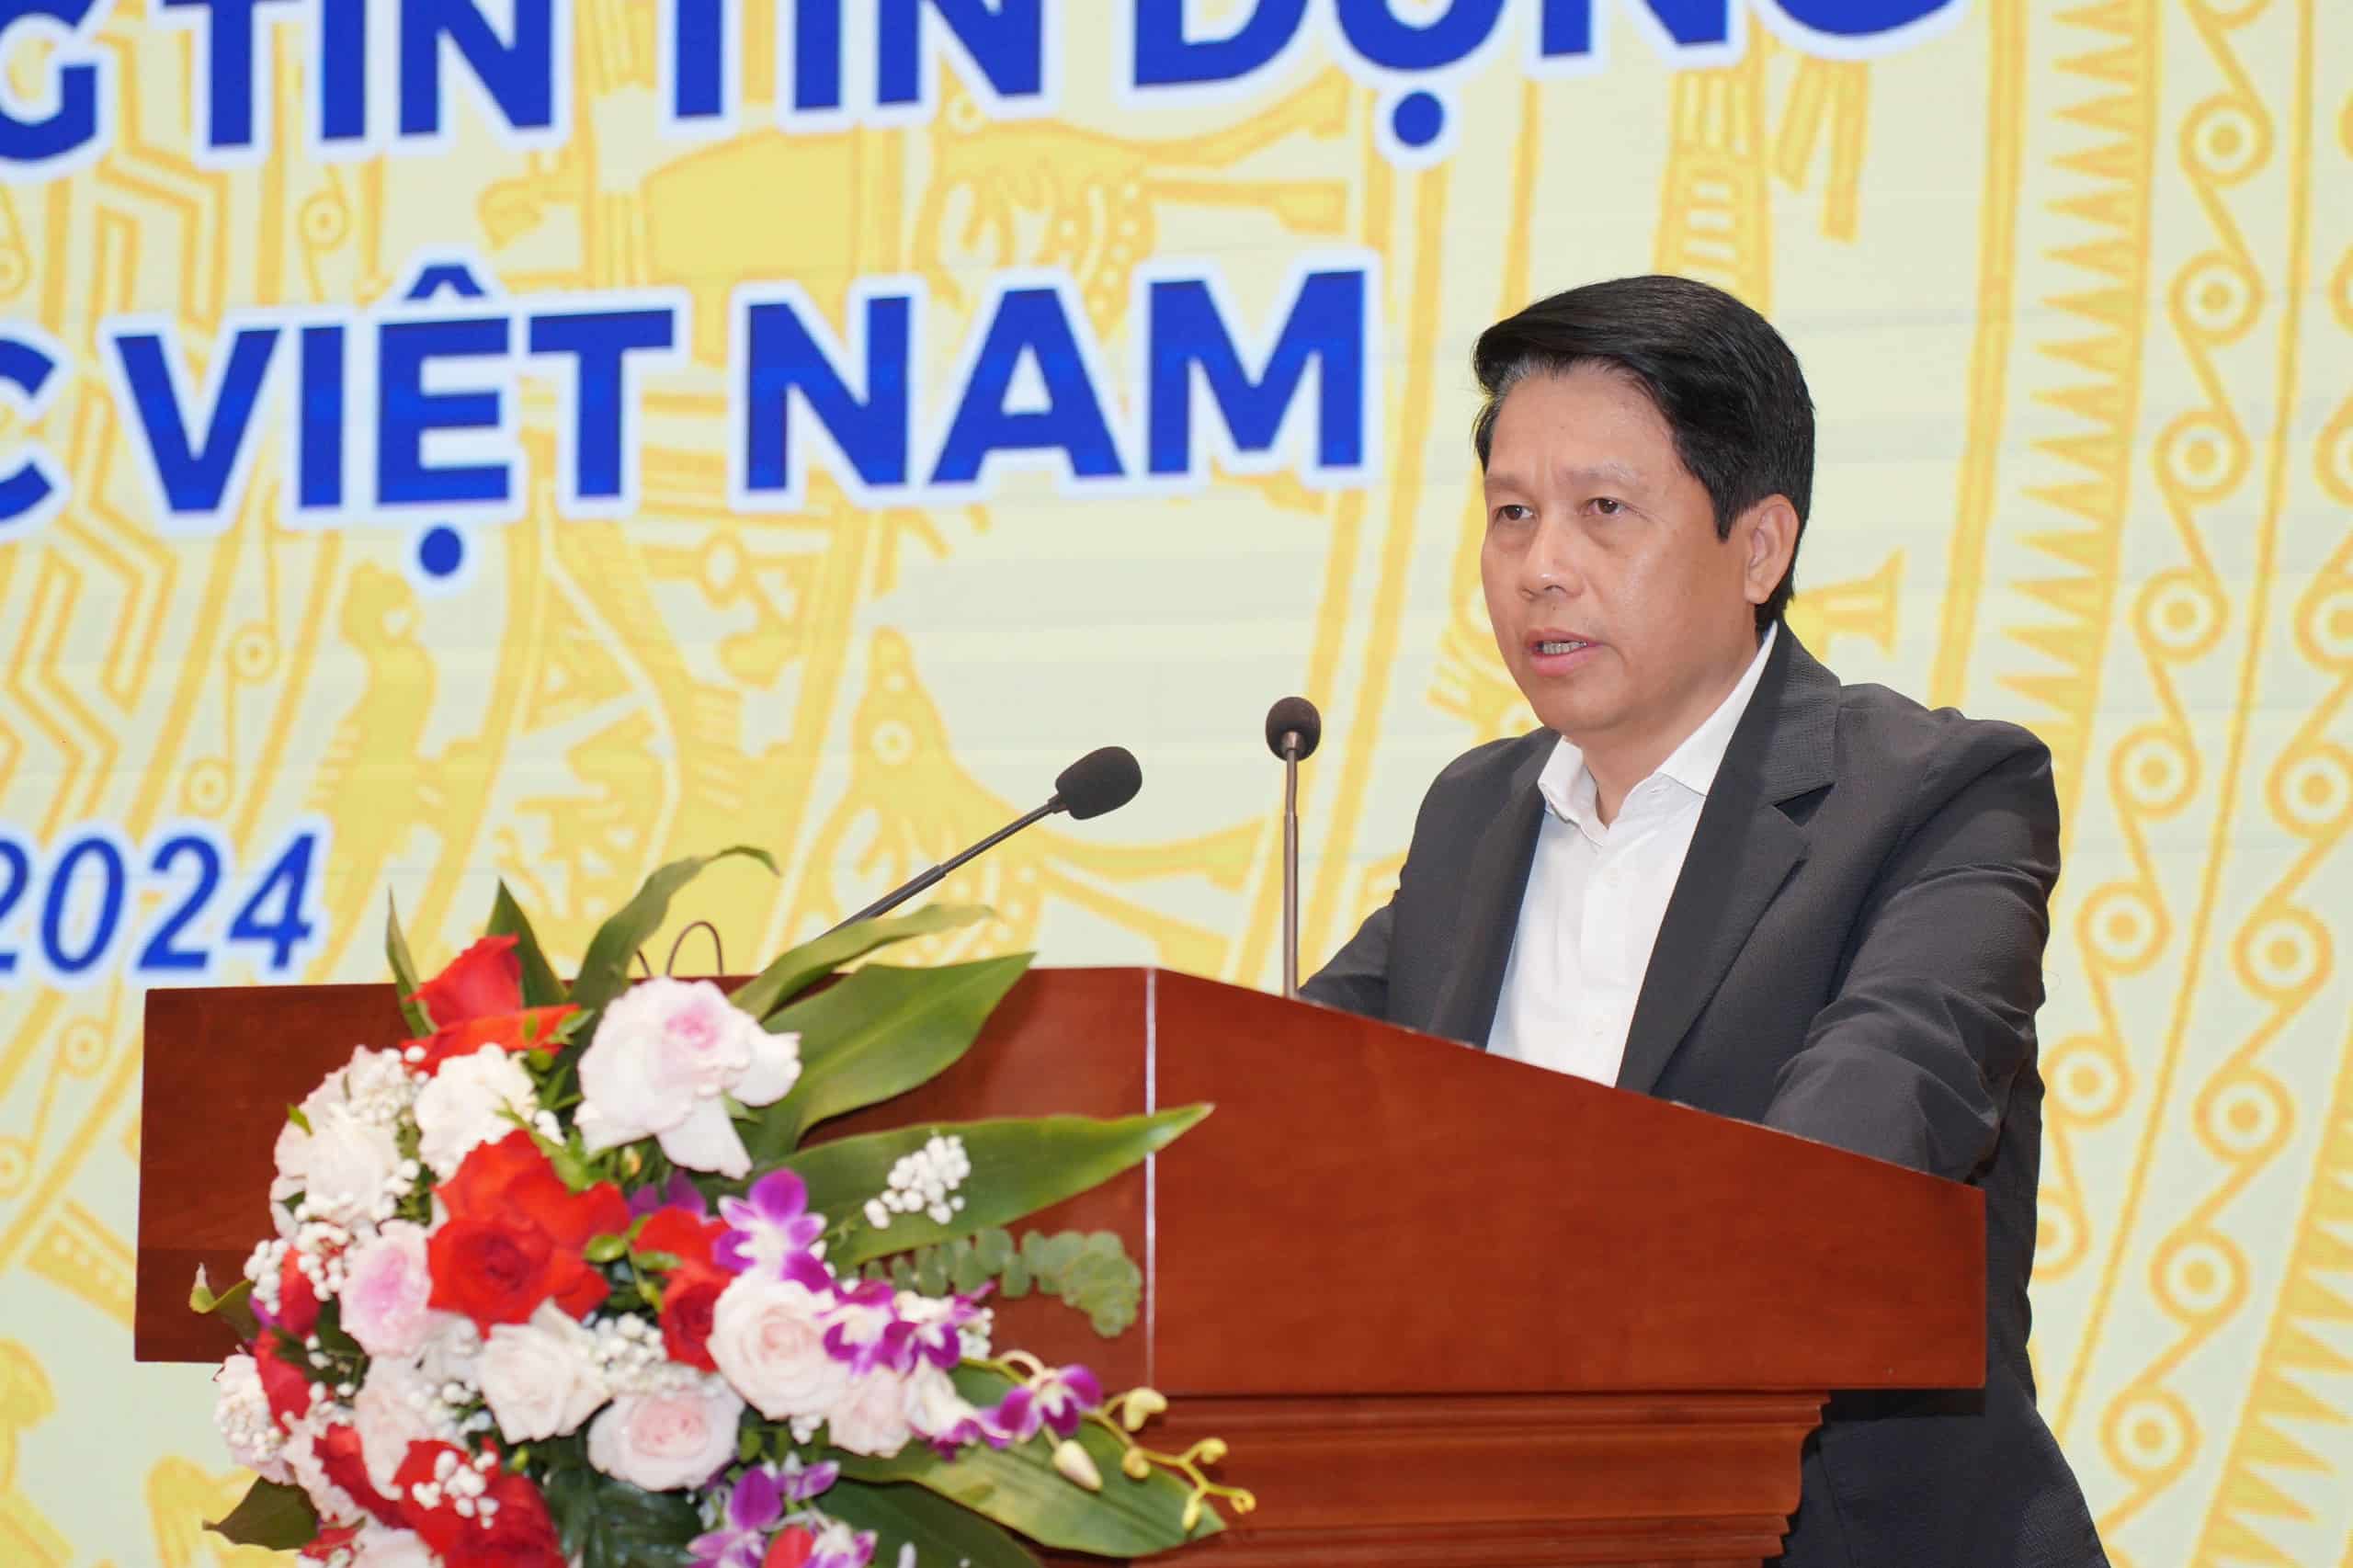 Phó Thống đốc NHNN Phạm Tiến Dũng đánh giá cao sự cố gắng của các vụ, cục NHNN và CIC trong việc ban hành kịp thời Thông tư 15. Ảnh BTC